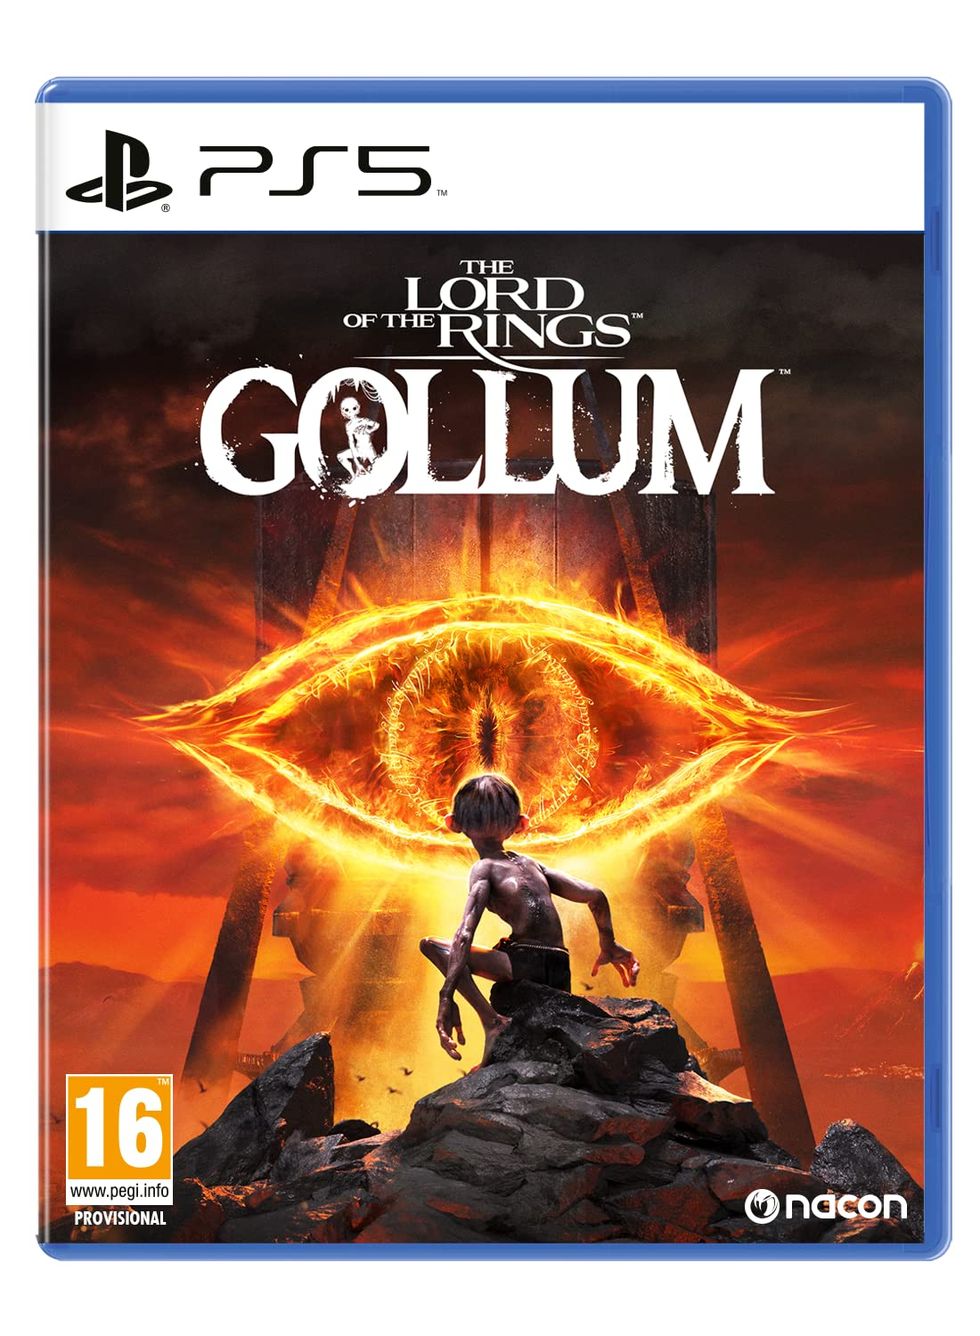 Władca Pierścieni: Gollum (PlayStation 5)